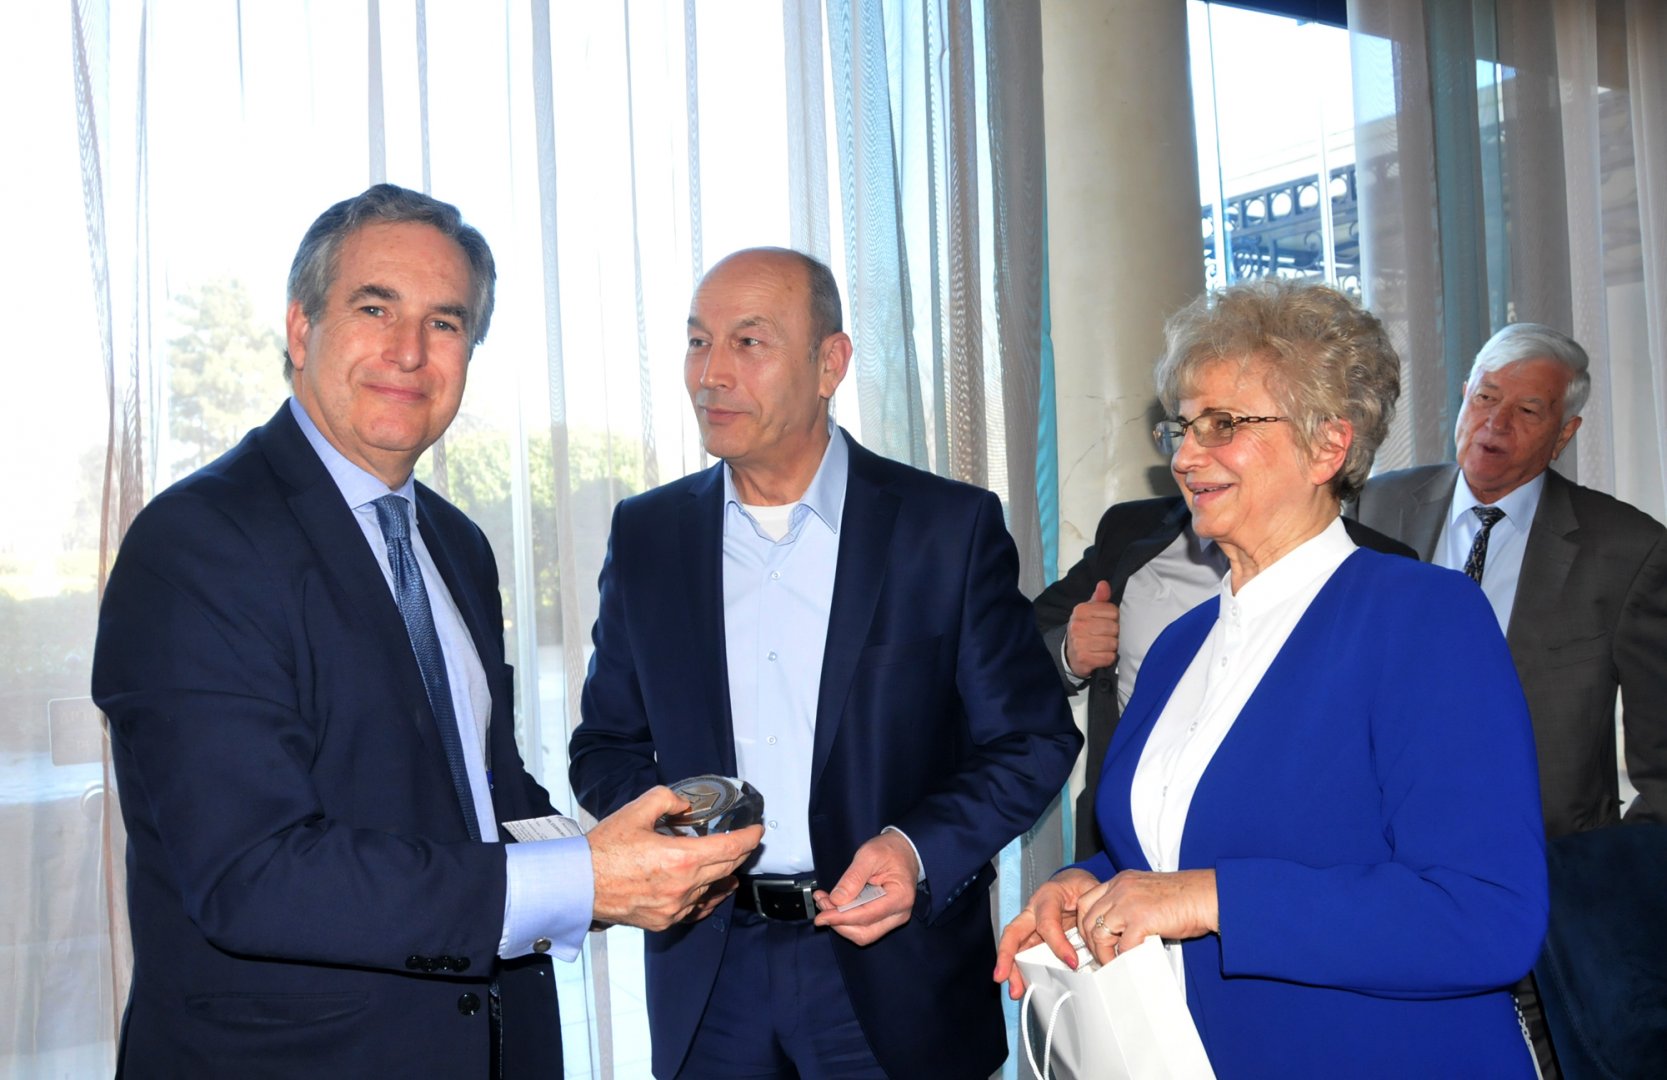 Посланикът на Испания получи почетния знак на Търговско индустриална камара - Бургас